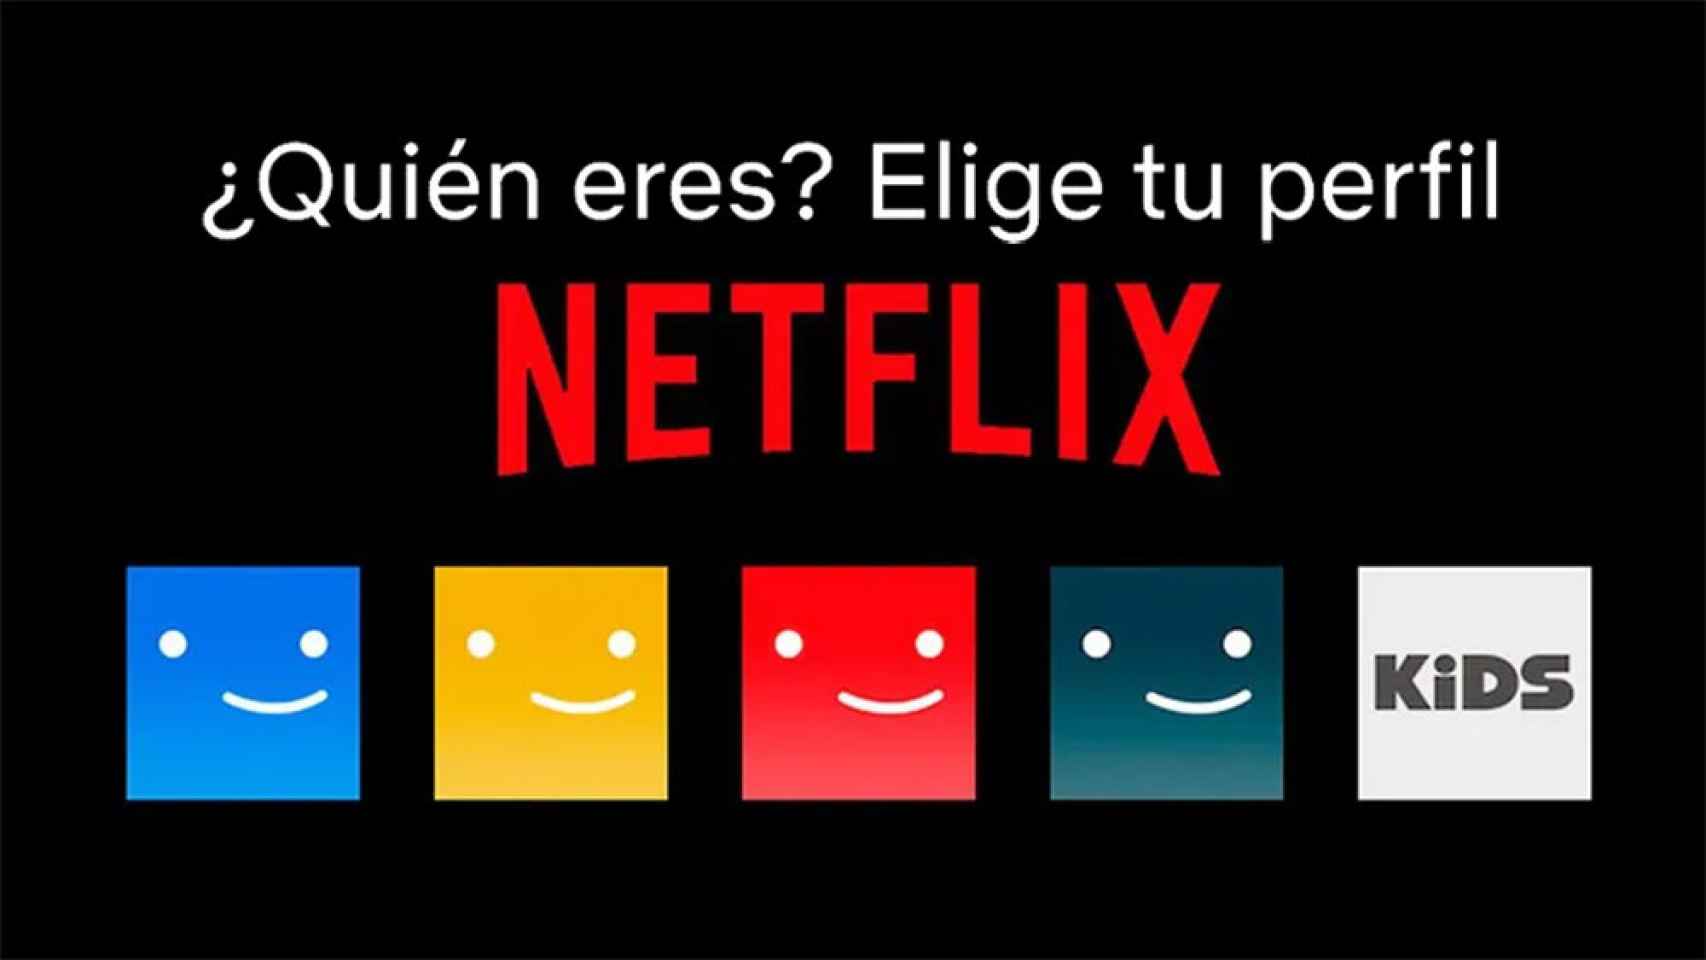 La policía del streaming llegará a primeros de 2023: Netflix explica las nuevas cuentas compartidas.